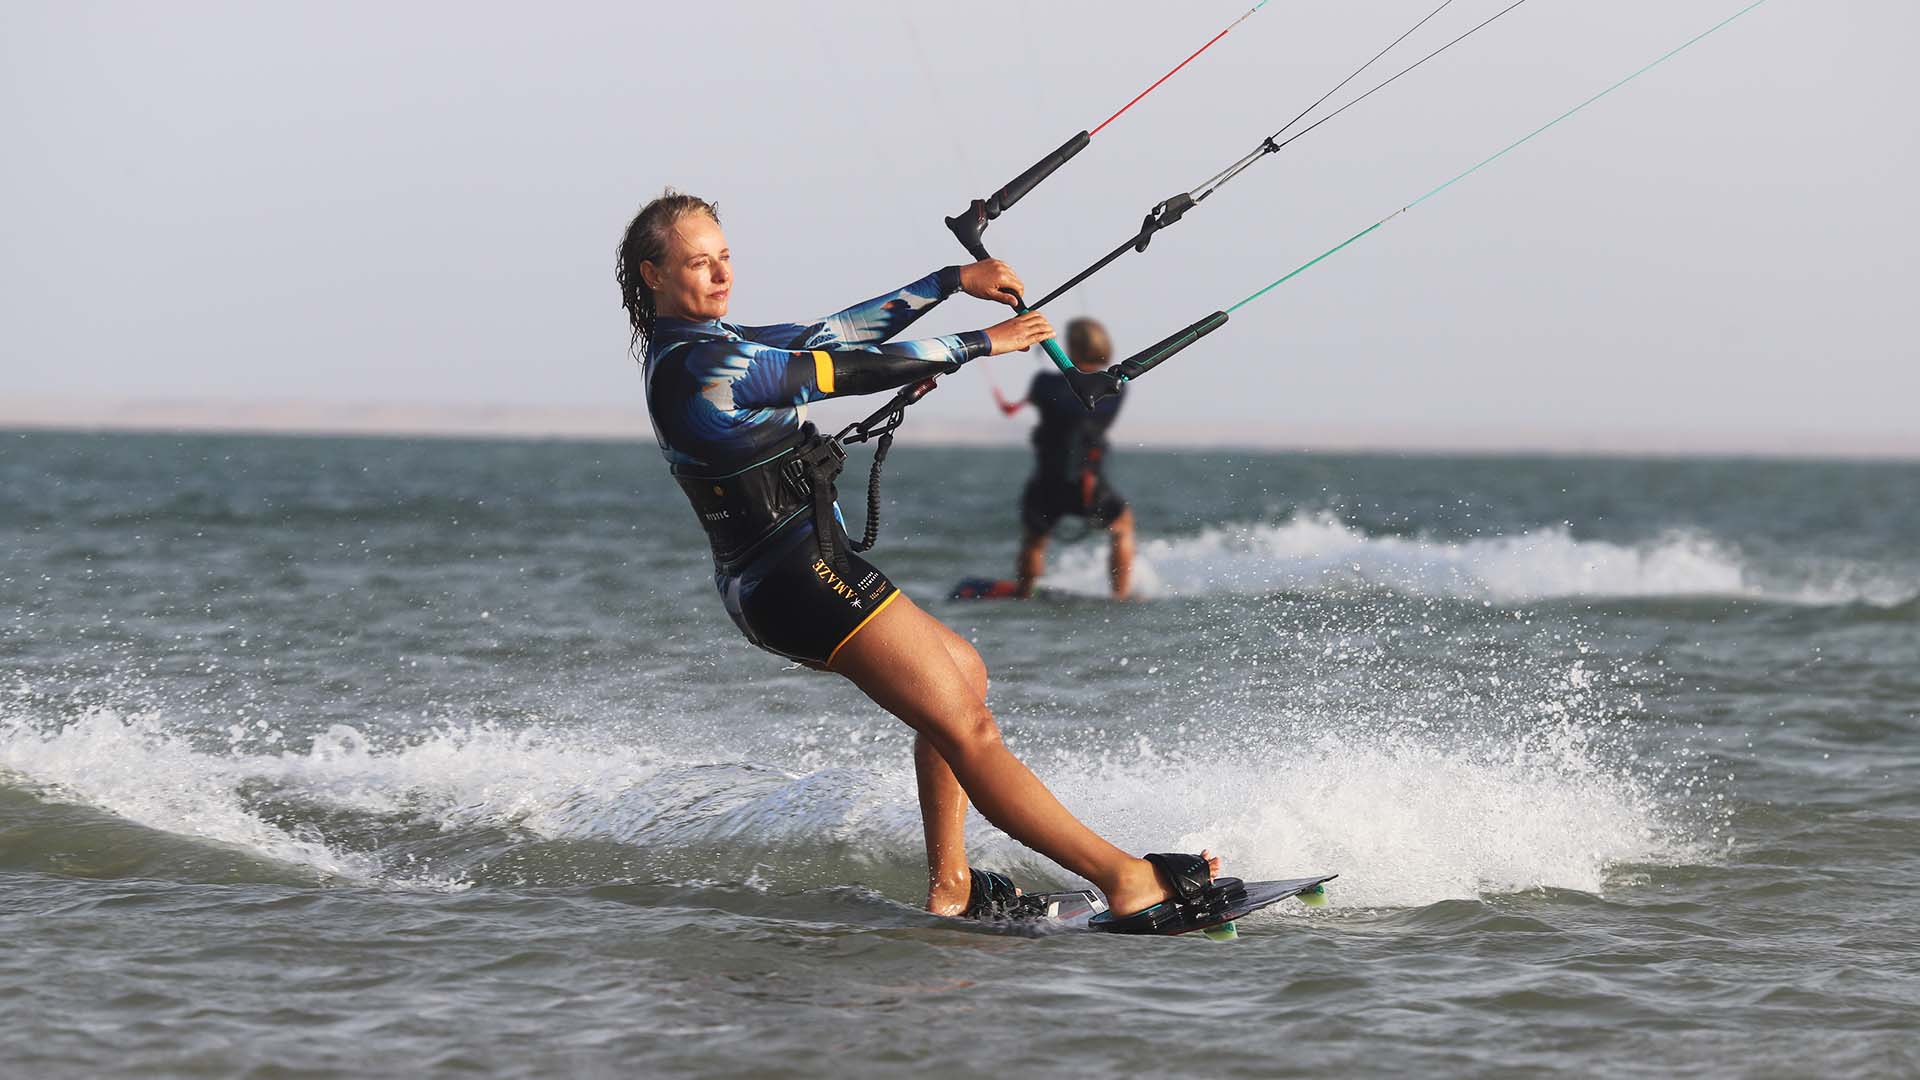 femme kitesurfeuse sur l'eau qui sourit